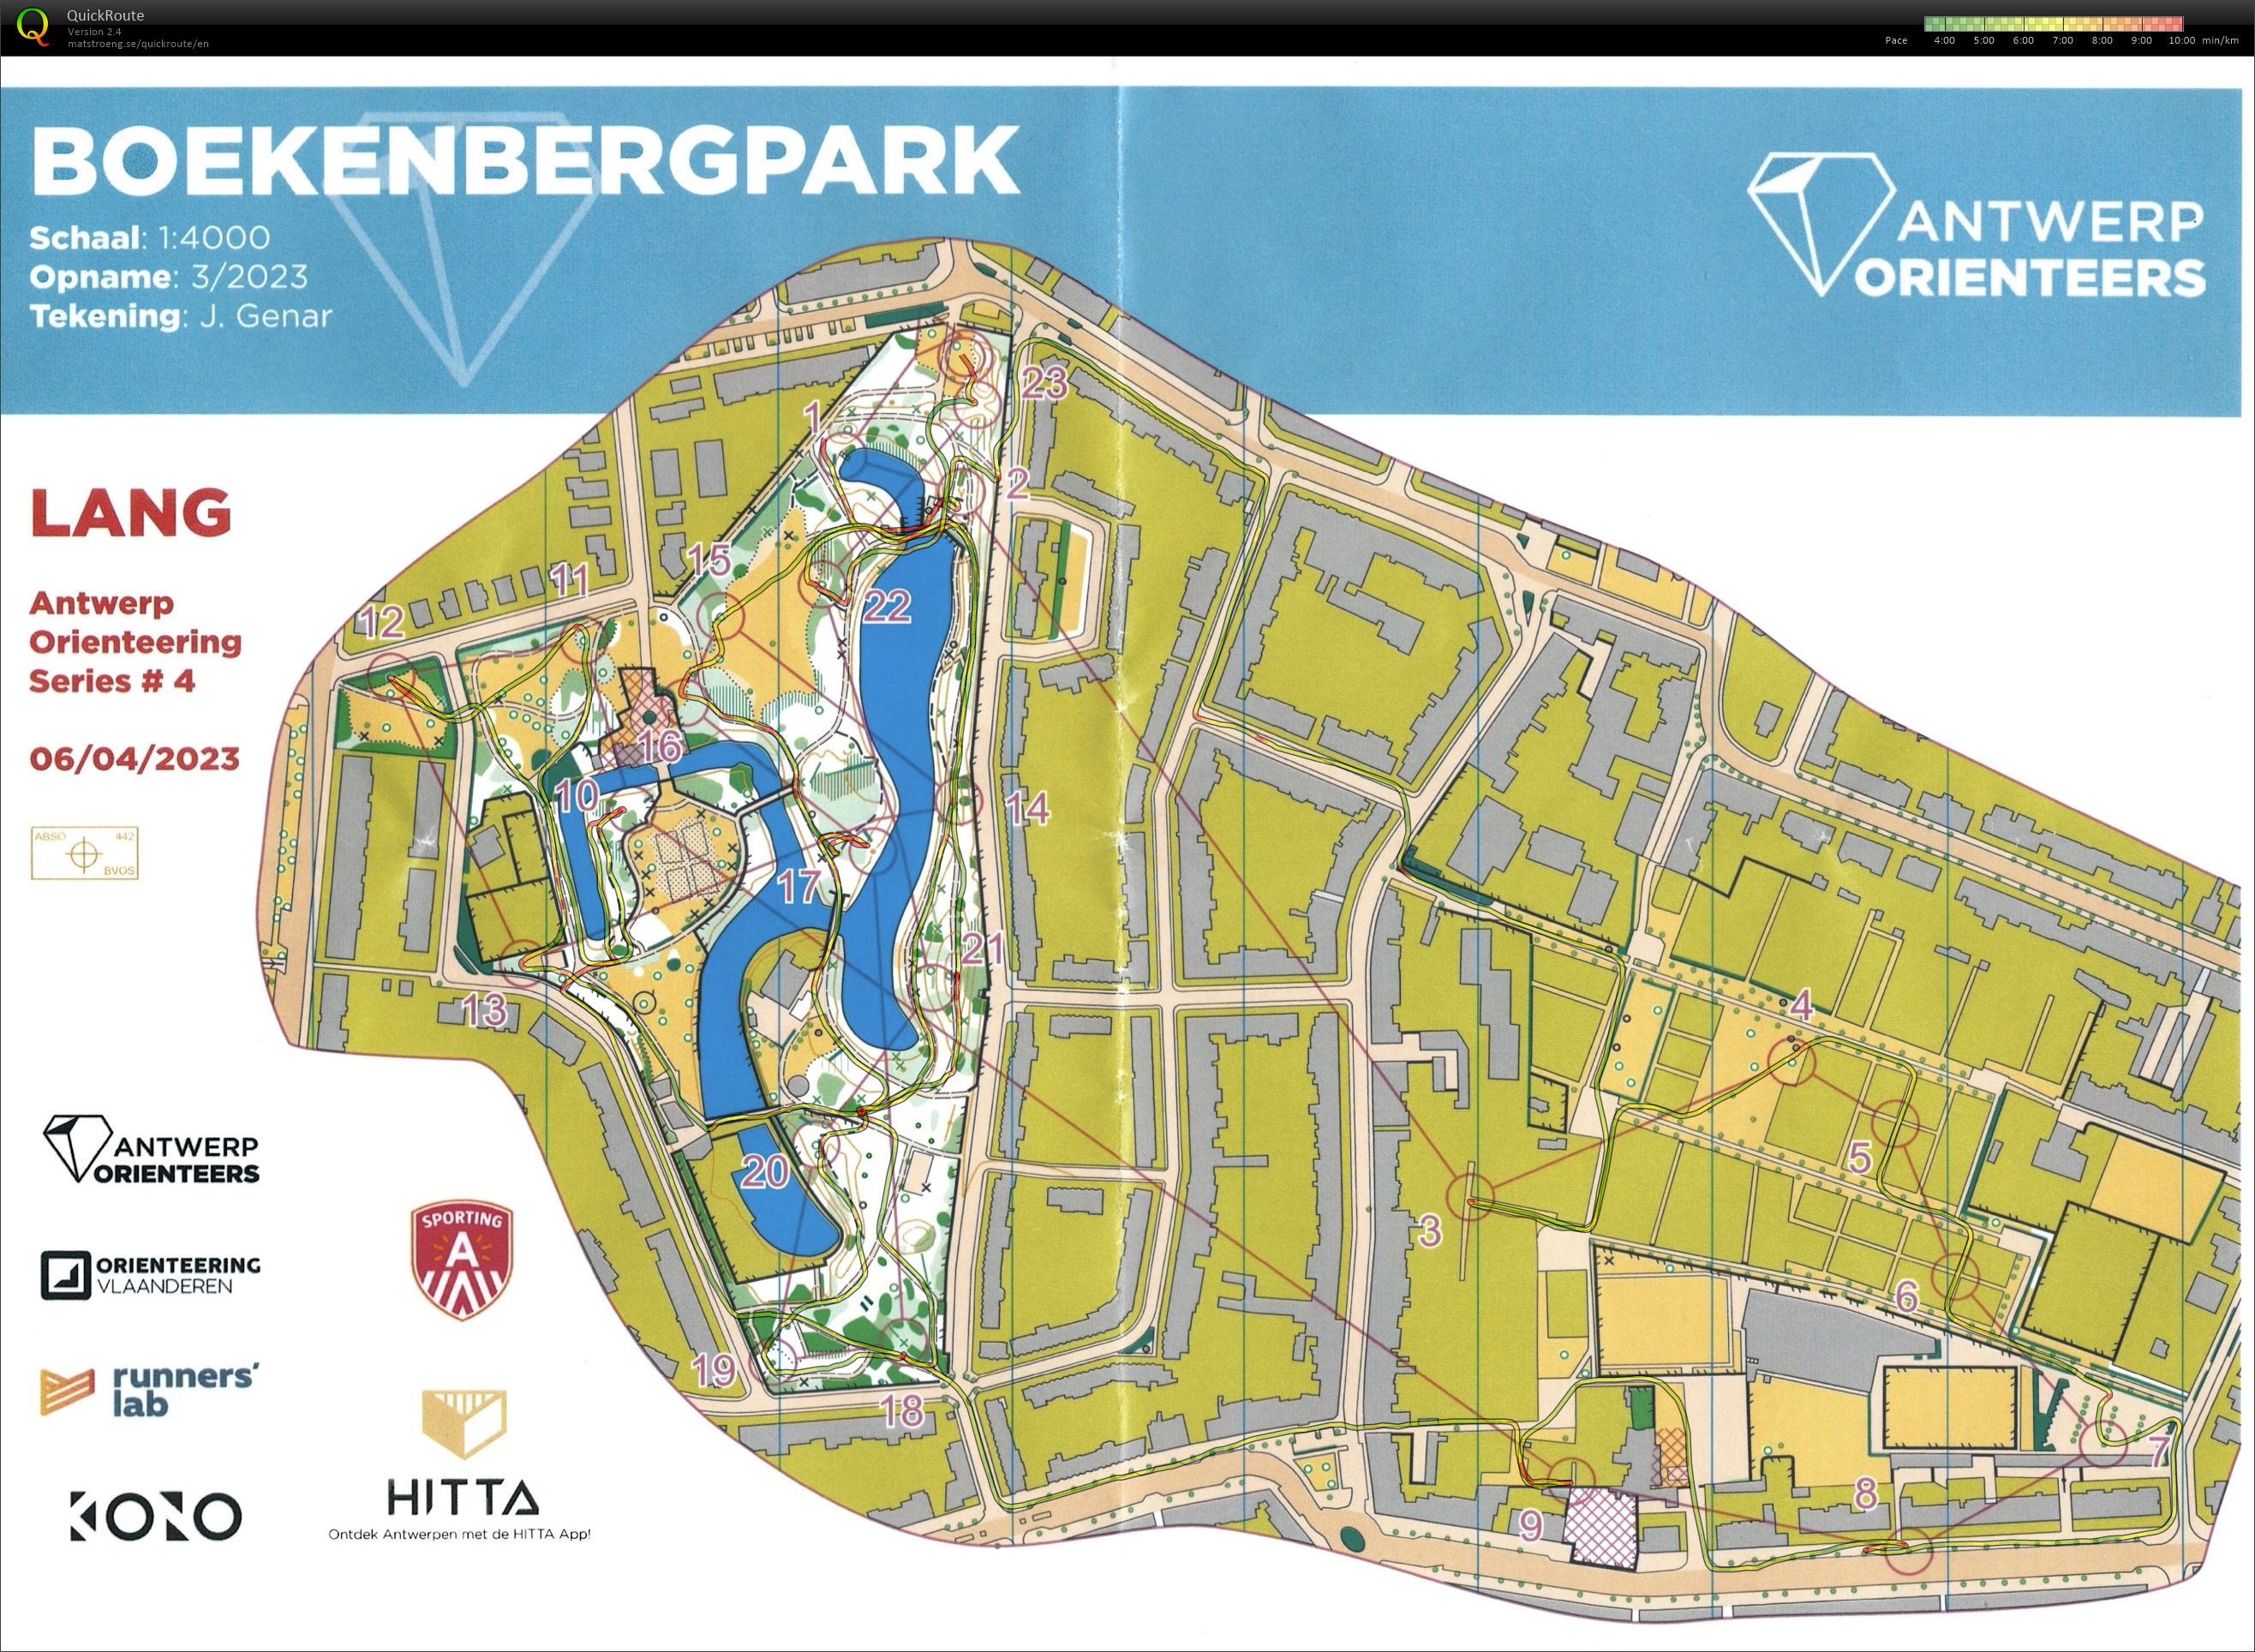 Antwerp Orienteering Series - Boekenbergpark - Lang (09.04.2023)